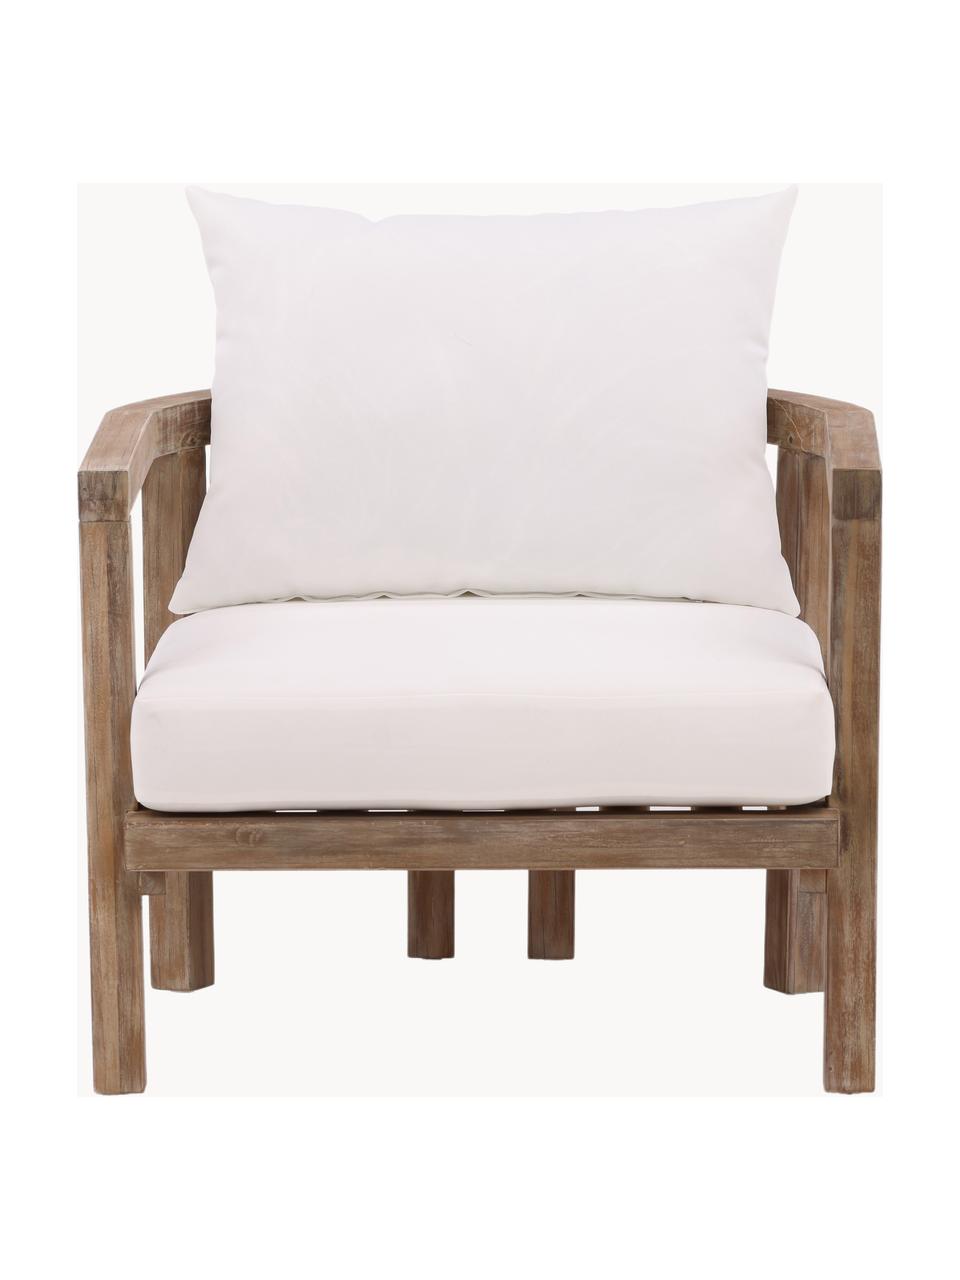 Krzesło ogrodowe z drewna akacjowego Erica, Stelaż: drewno akacjowe olejowane, Kremowobiała tkanina, drewno akacjowe, S 71 x W 55 cm